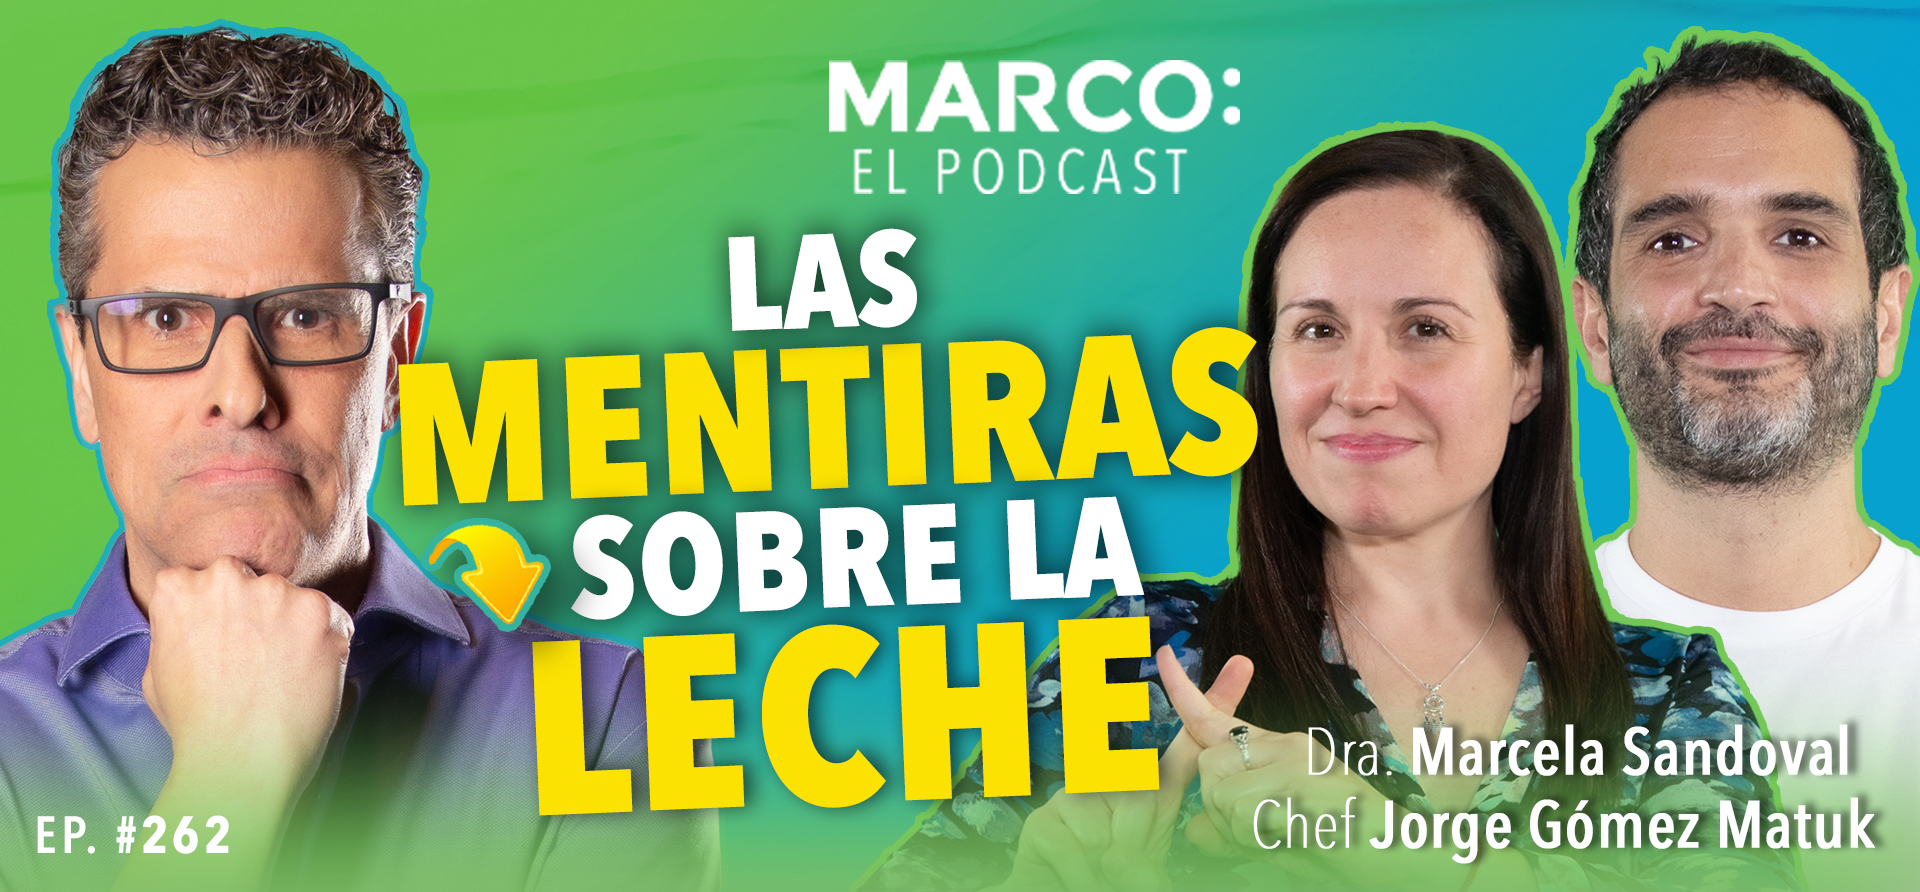 Las mentiras sobre la leche Podcast Marco Antonio Regil